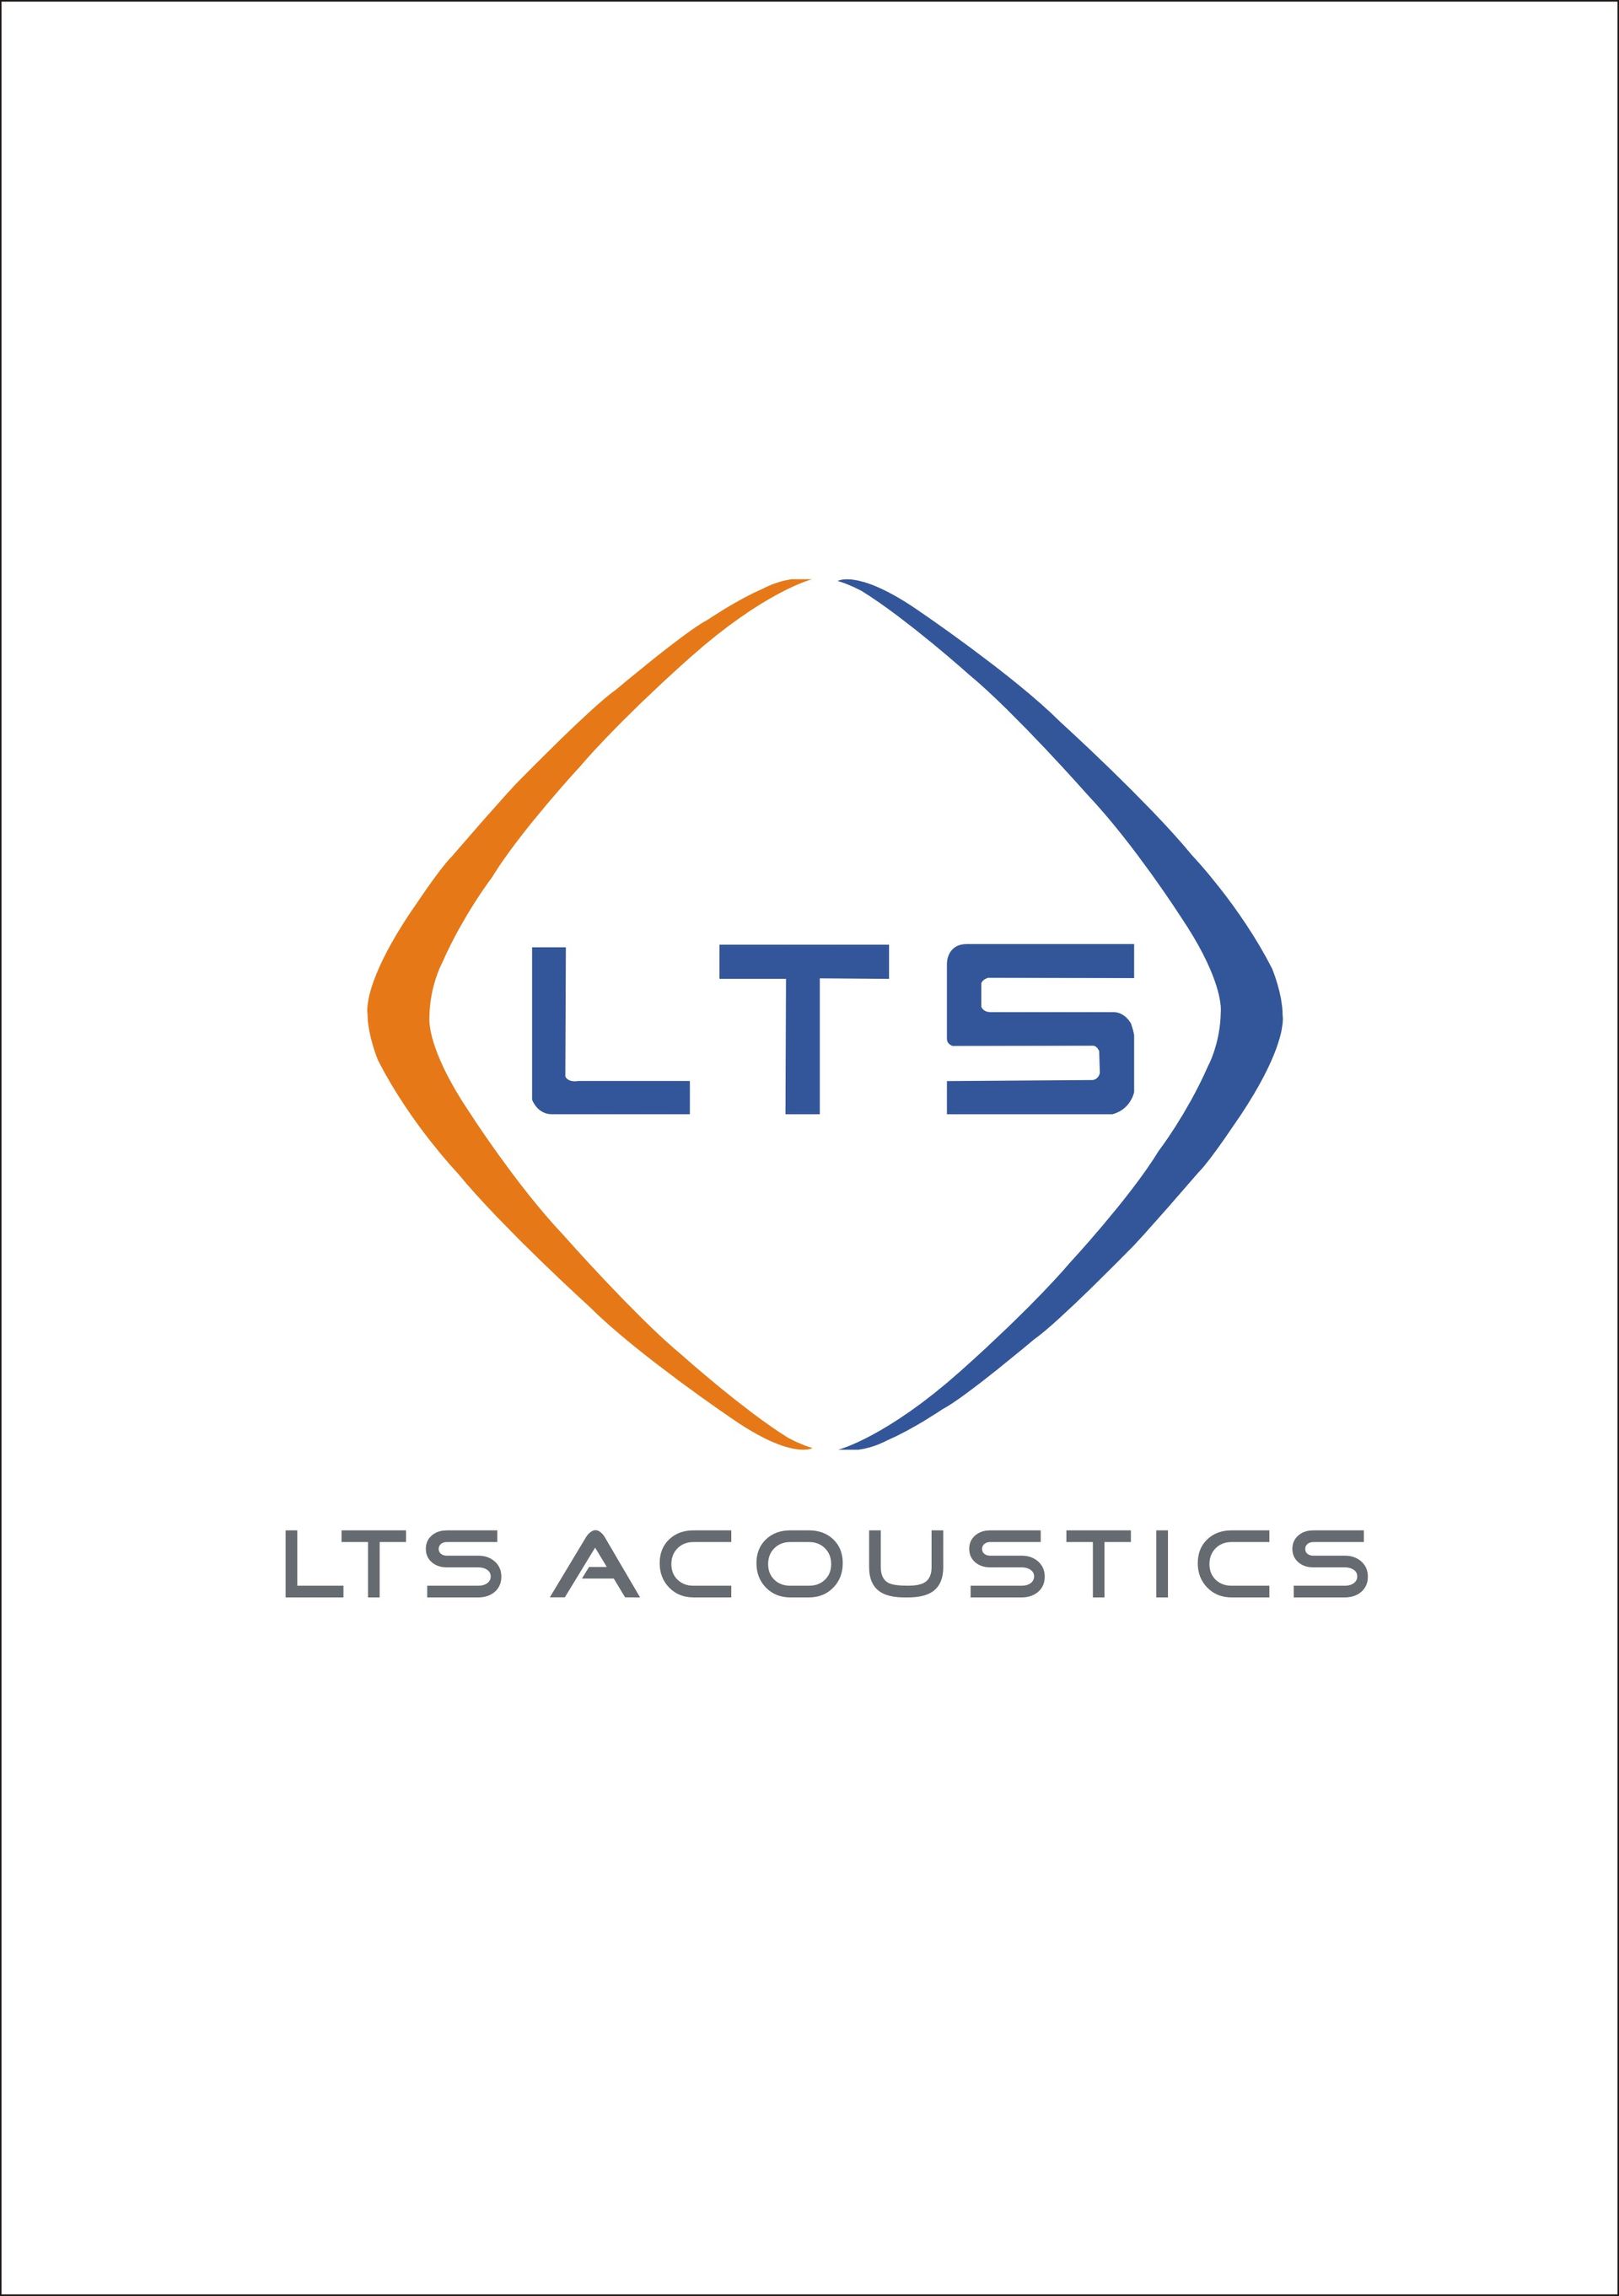 LTS Acoustics Co., Ltd logo